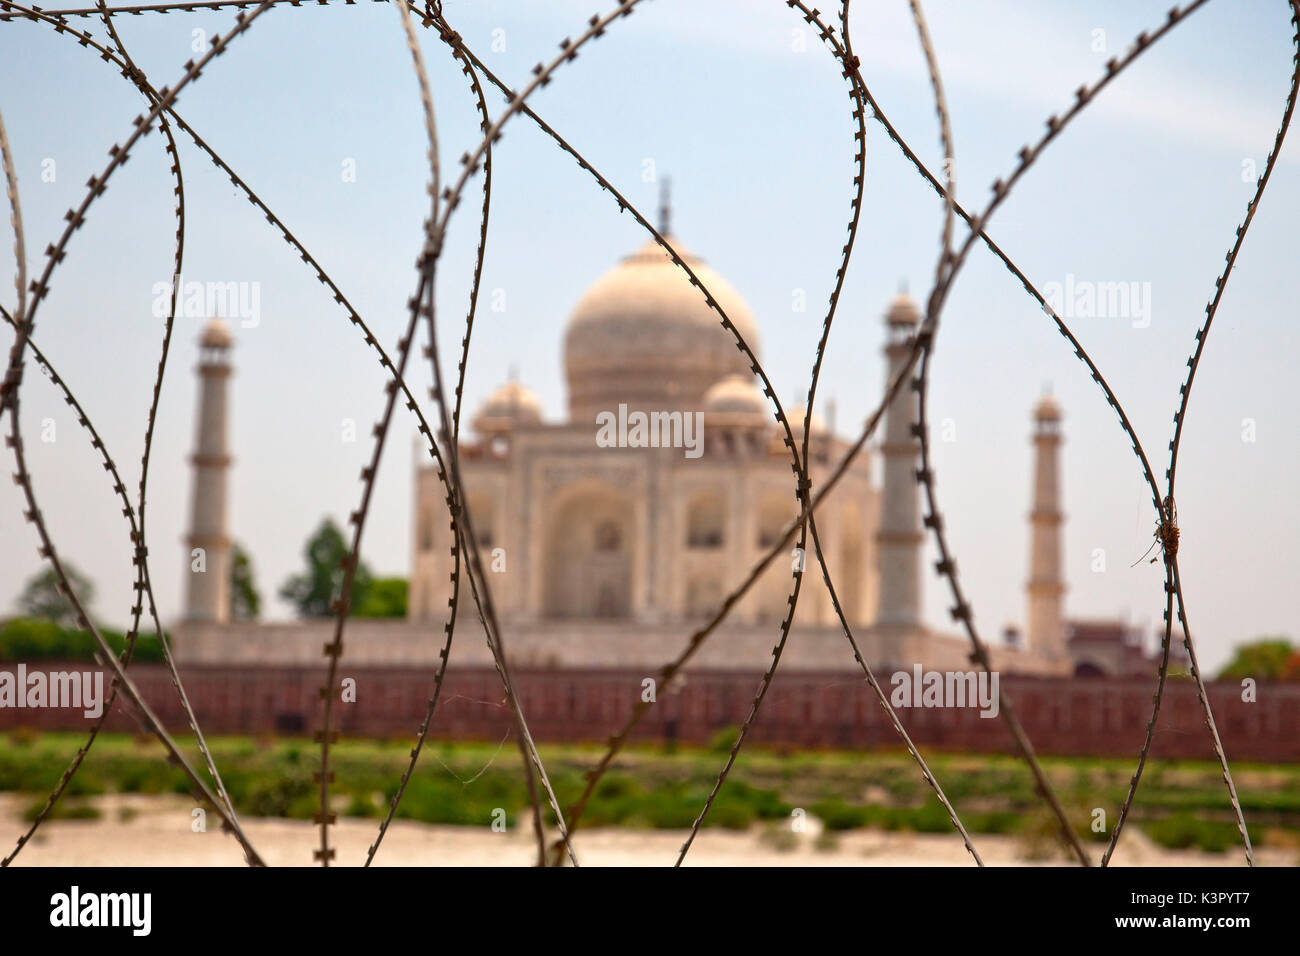 Il Taj Mahal è un marmo bianco mausoleo di Agra, India. È ampiamente considerato un premier esempio di architettura di Mughal, che combina gli elementi di indiani, persiano, e stili islamici ed è uno di India dalle principali attrazioni turistiche. Esso è comunemente indicato come il gioiello dell'India. Ed è probabilmente anche il più grande monumento di amore Agra, India Foto Stock